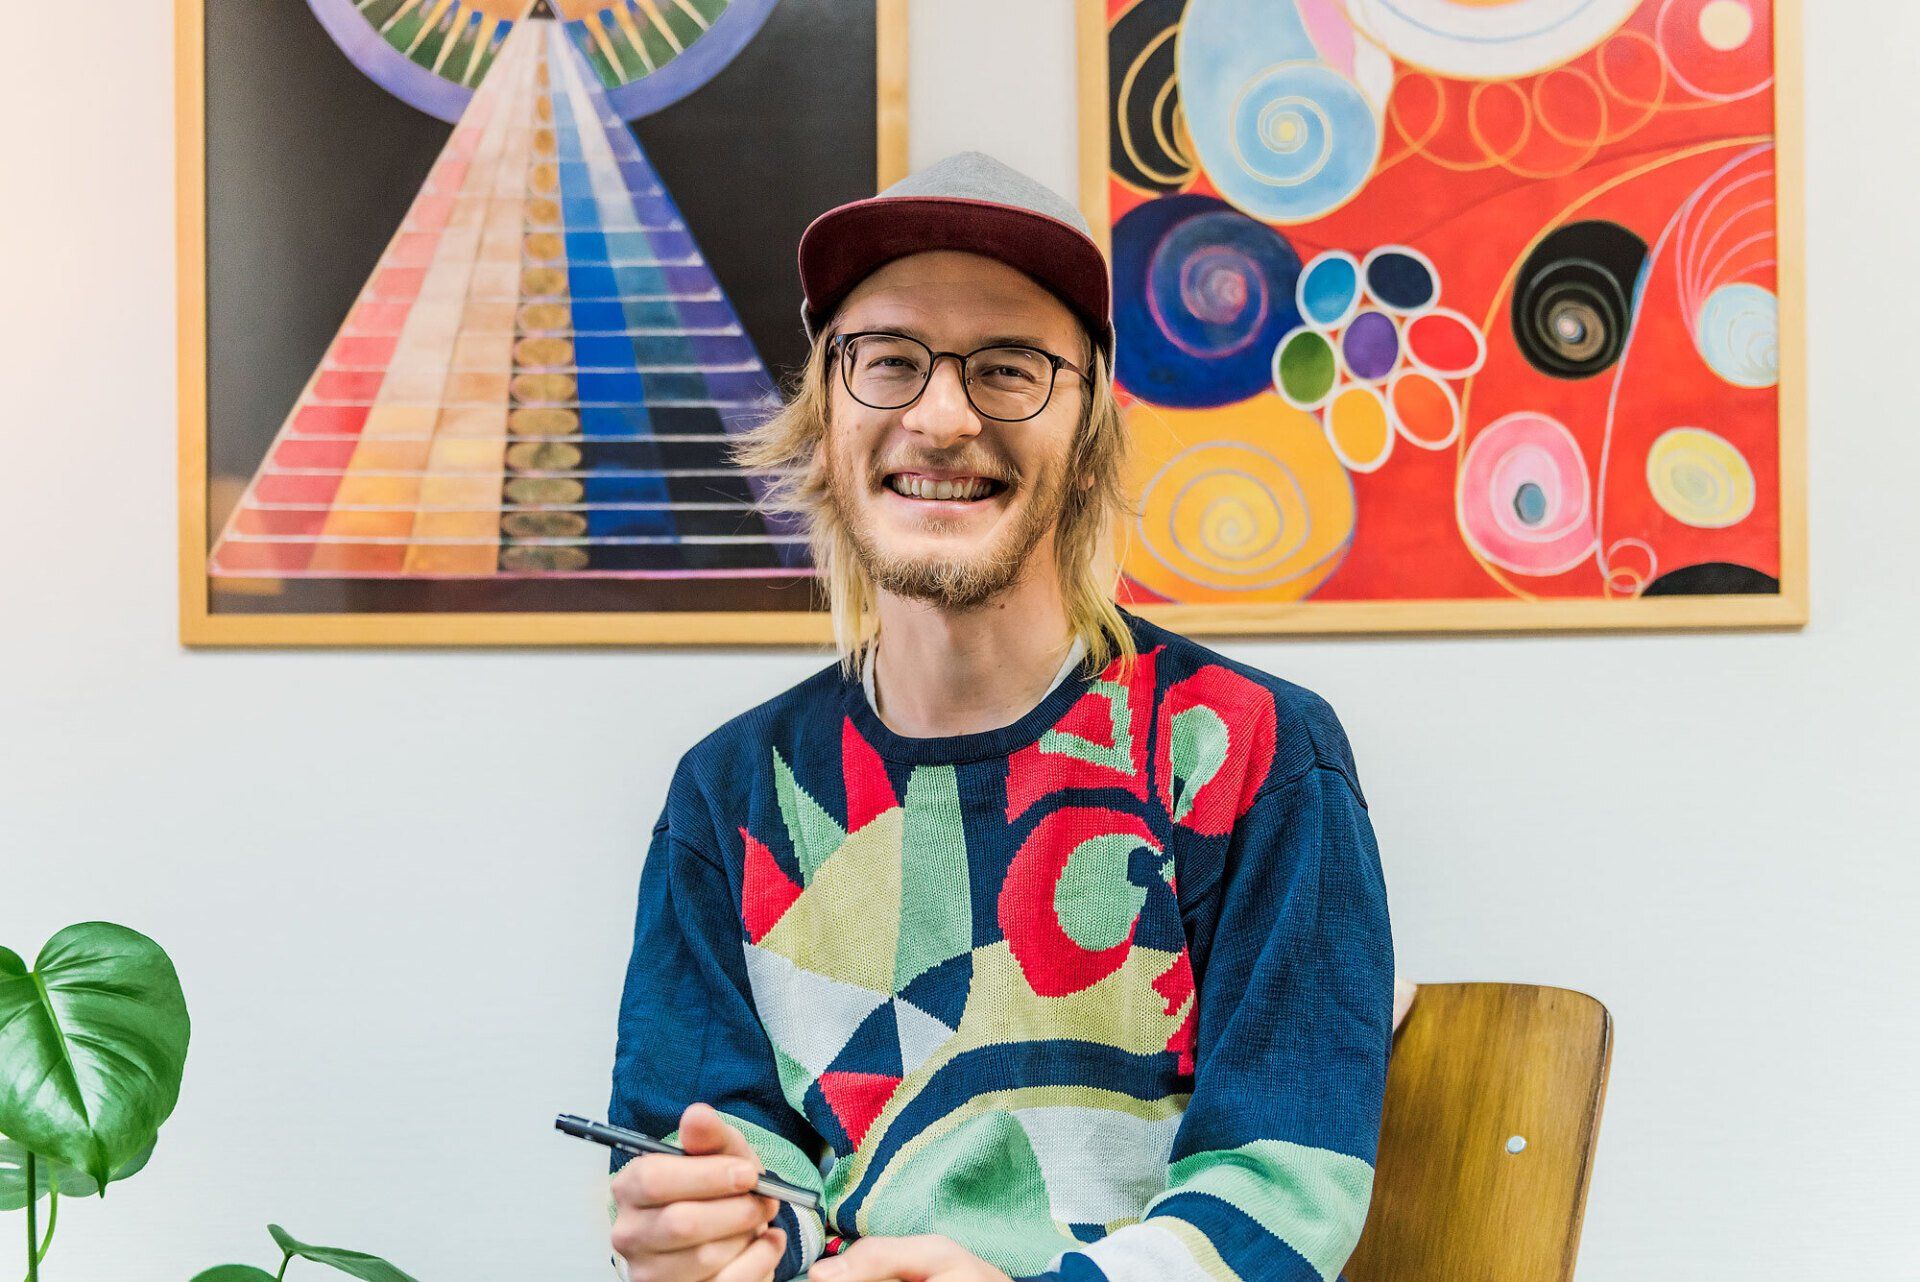 Poeten Jimmy Alm sitter framför två abstrakta, färgglada tavlor, iklädd keps och en mönstrad tröja. Han ler stort.